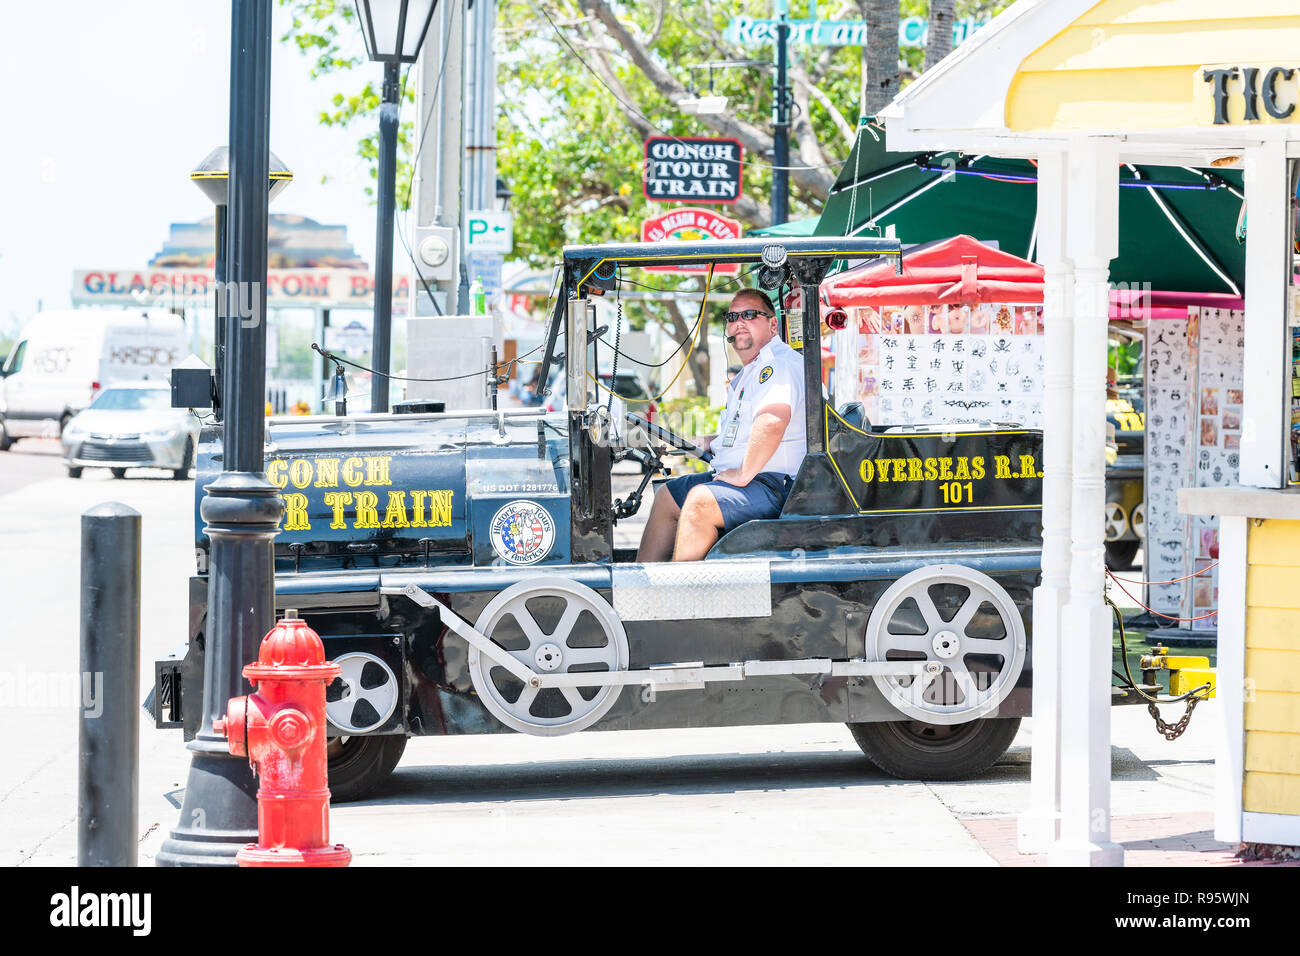 Paris, France - 1 mai 2018 : personne de sexe masculin, l'homme, un conducteur circulant, équitation couleur jaune tour bus trolley avec des touristes à street road en Floride sur l'île Banque D'Images